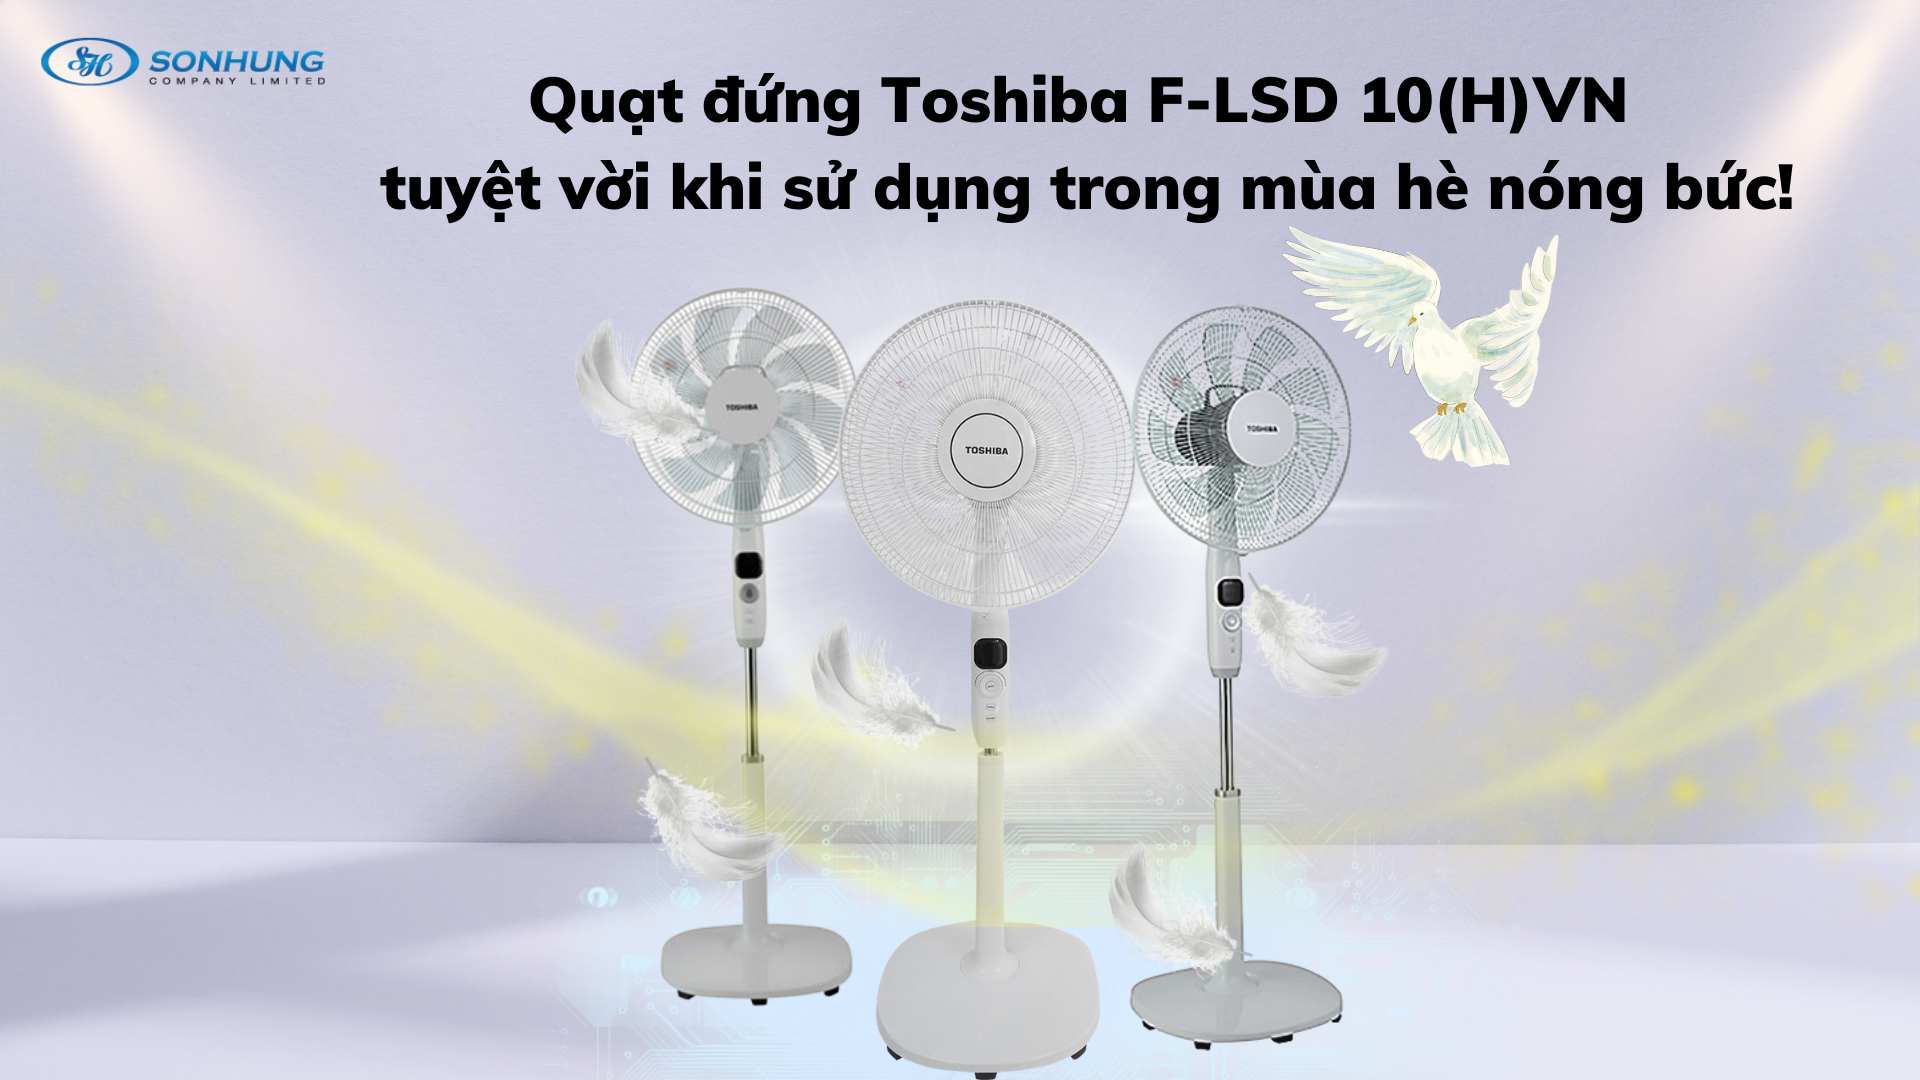 Quạt đứng Toshiba F-LSD 10(H)VN tuyệt vời khi sử dụng trong mùa hè nóng bức!